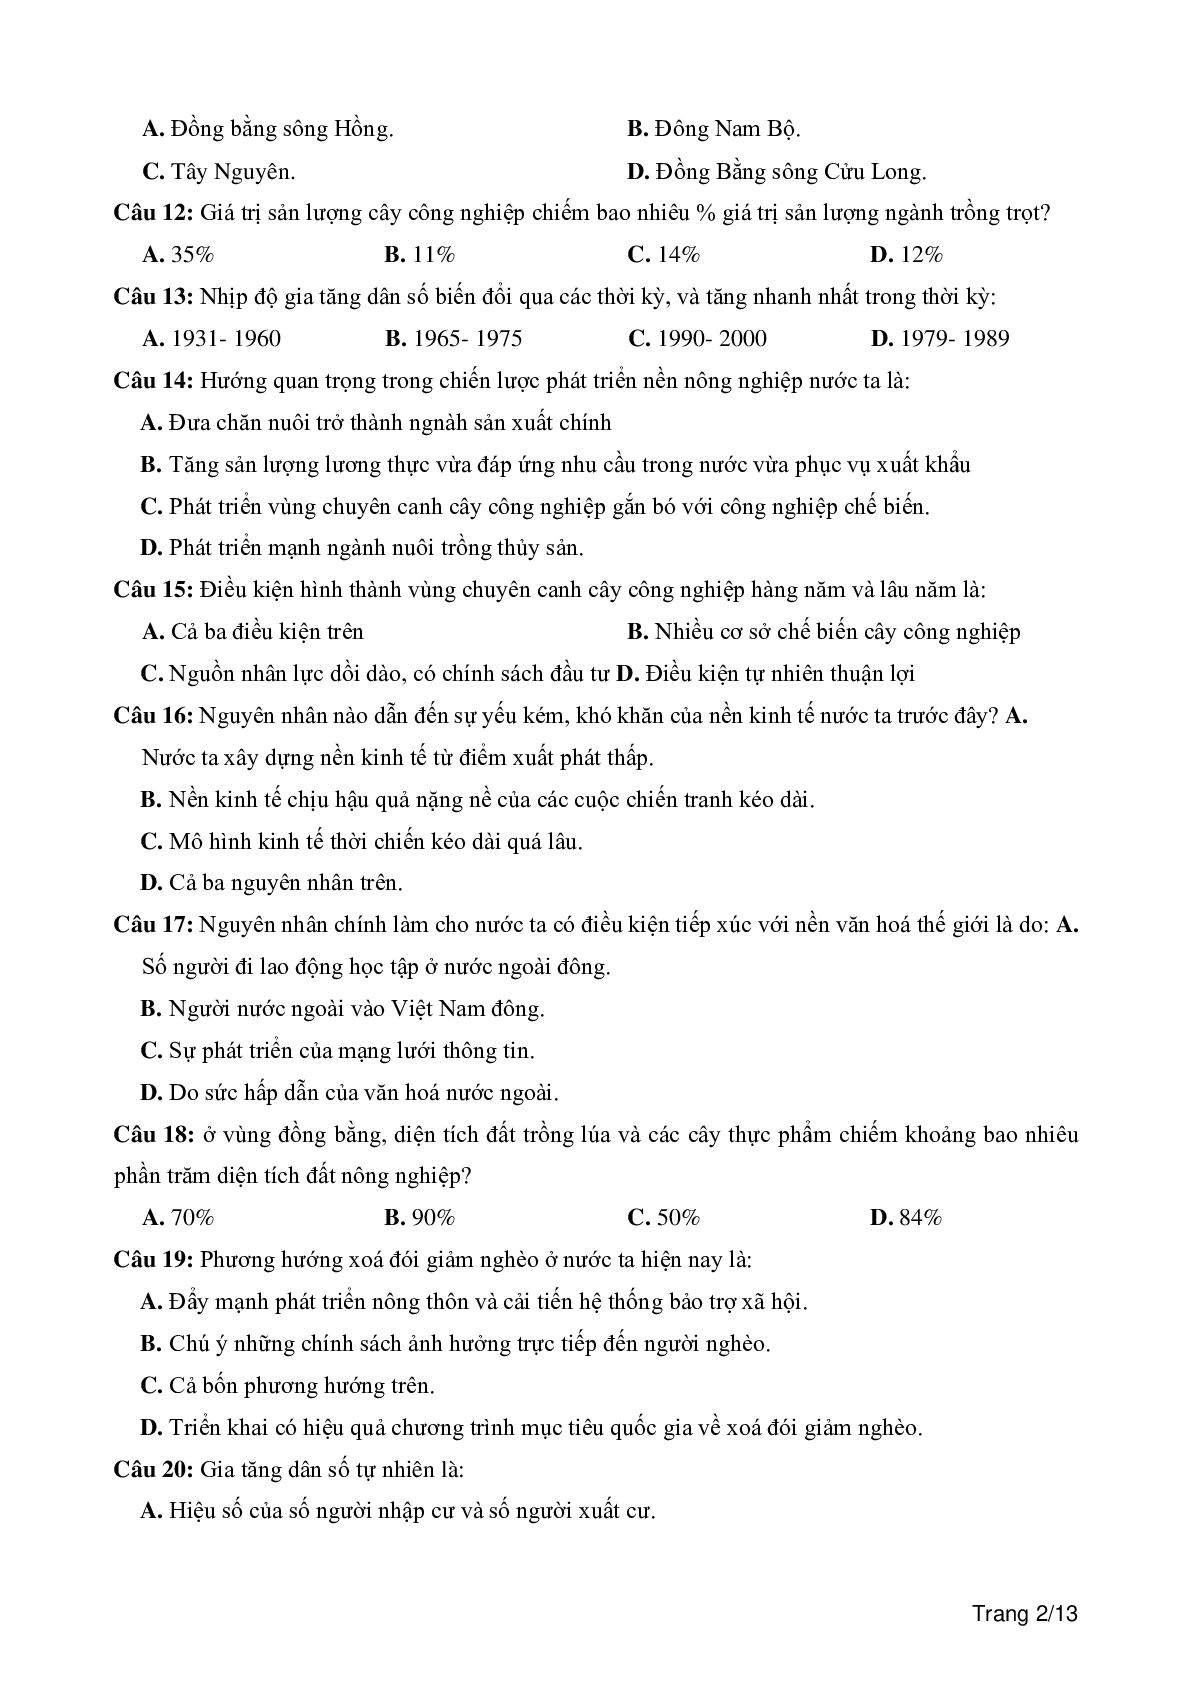 100 câu trắc nghiệm khách quan môn Địa lí lớp 12 (trang 2)